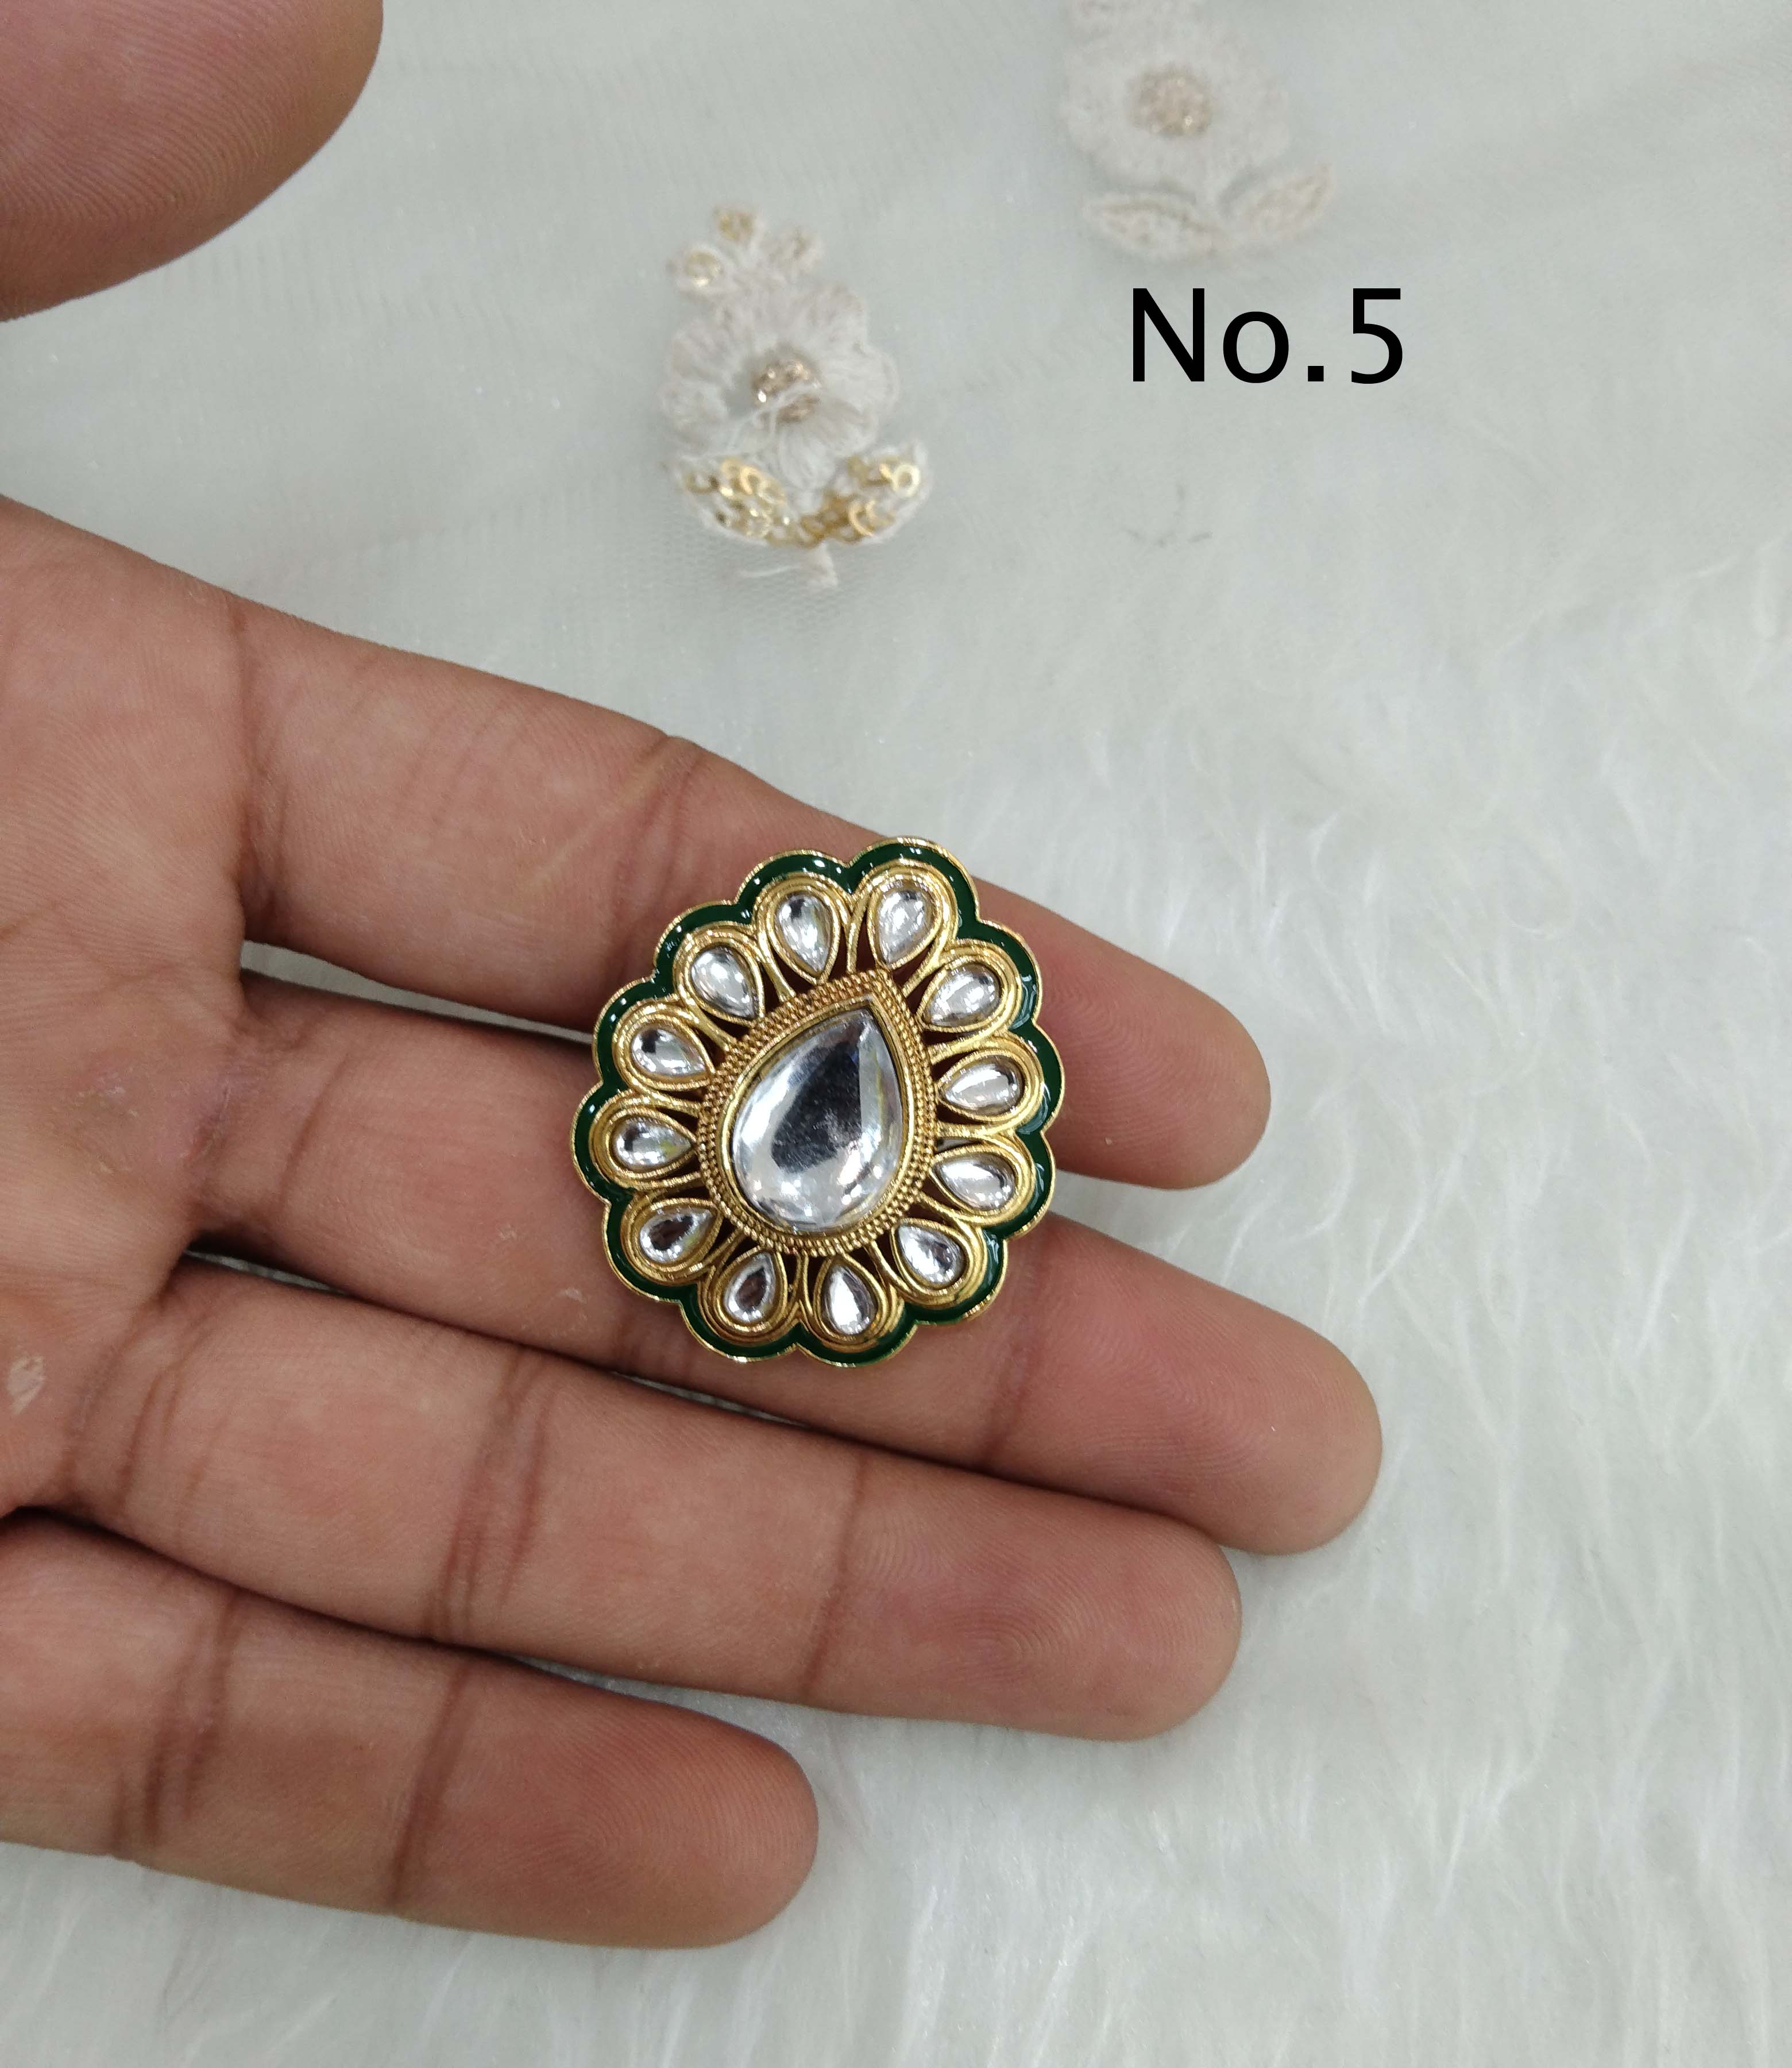 Vintage Floral Design Halo Engagement Ring, 14K White Gold Flower Ring